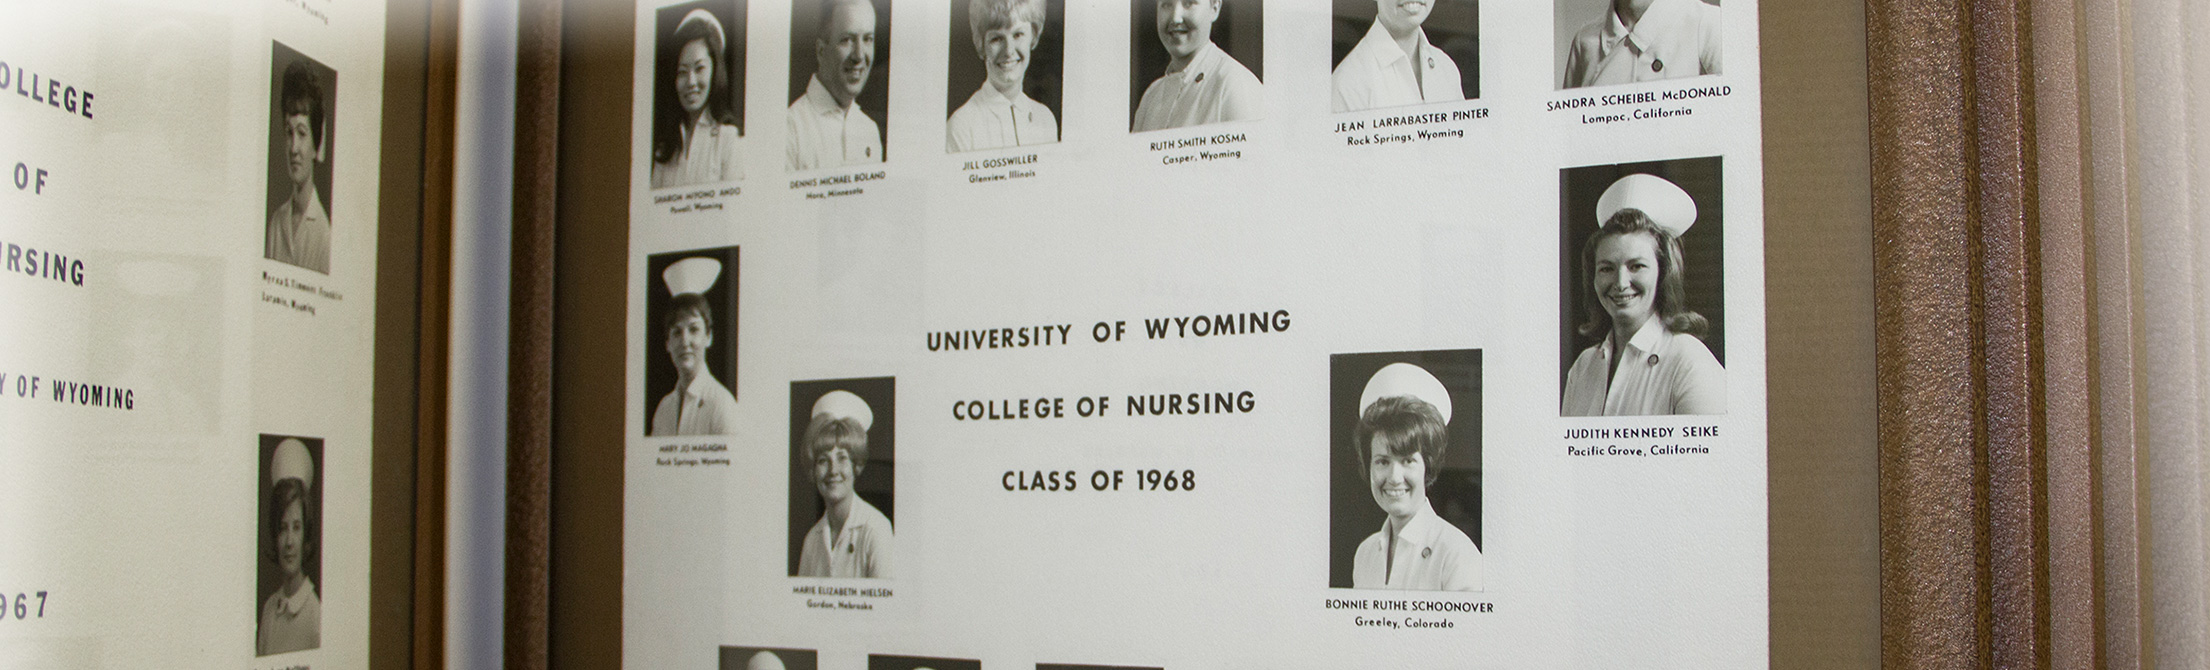 UW School of Nursing ALUMNI page - pictured, class of 1968